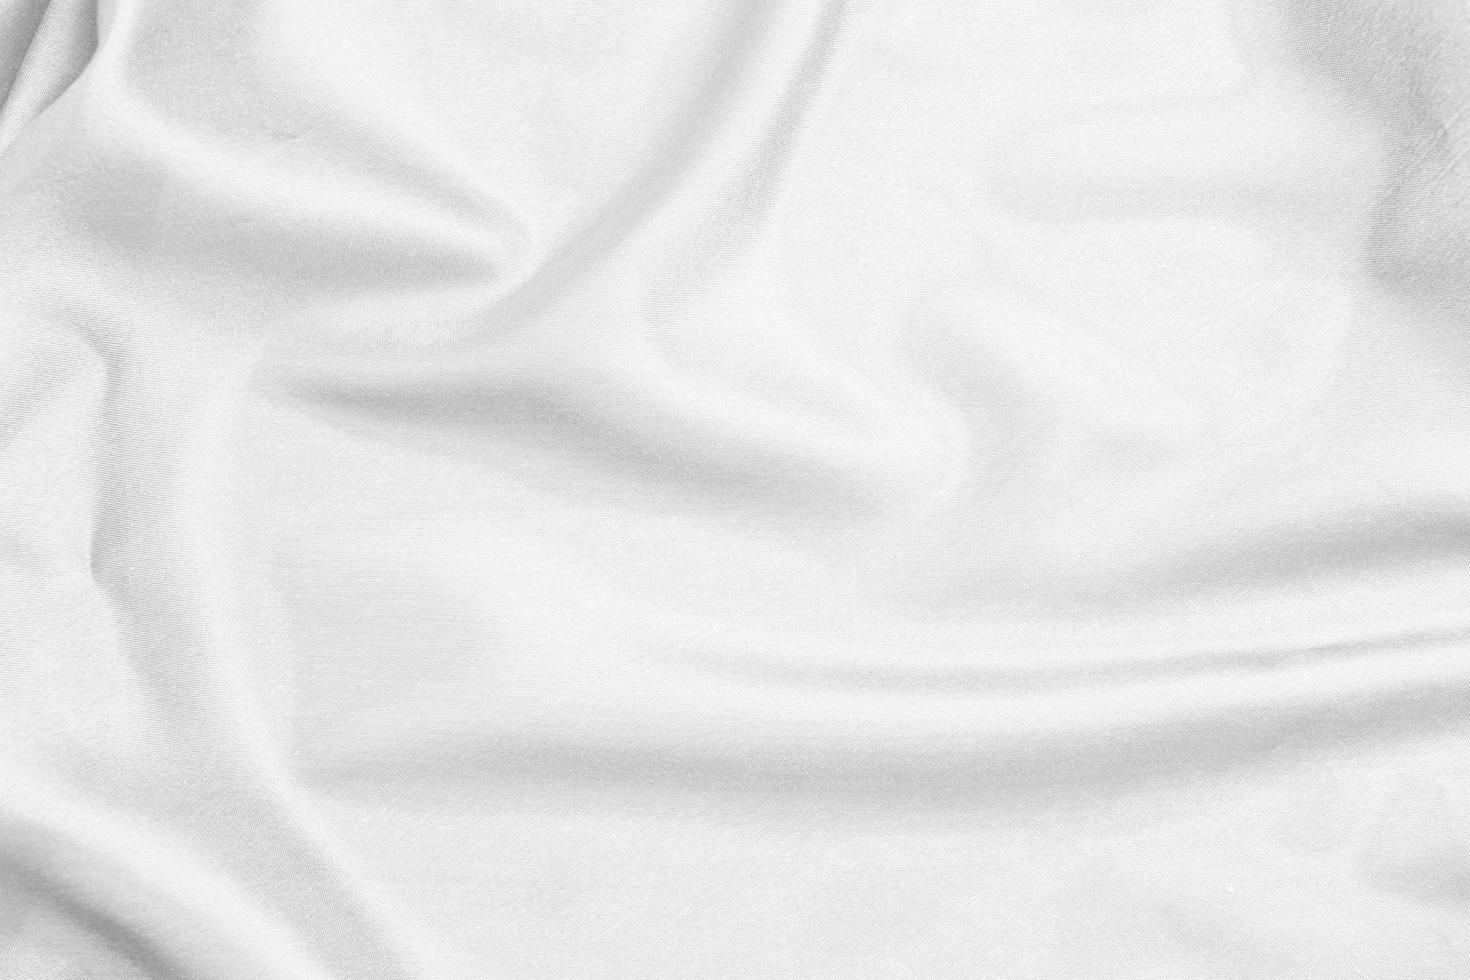 Smooth Elegant White Cloth on White Background Stock Image - Image of  clothing, beautiful: 90792373